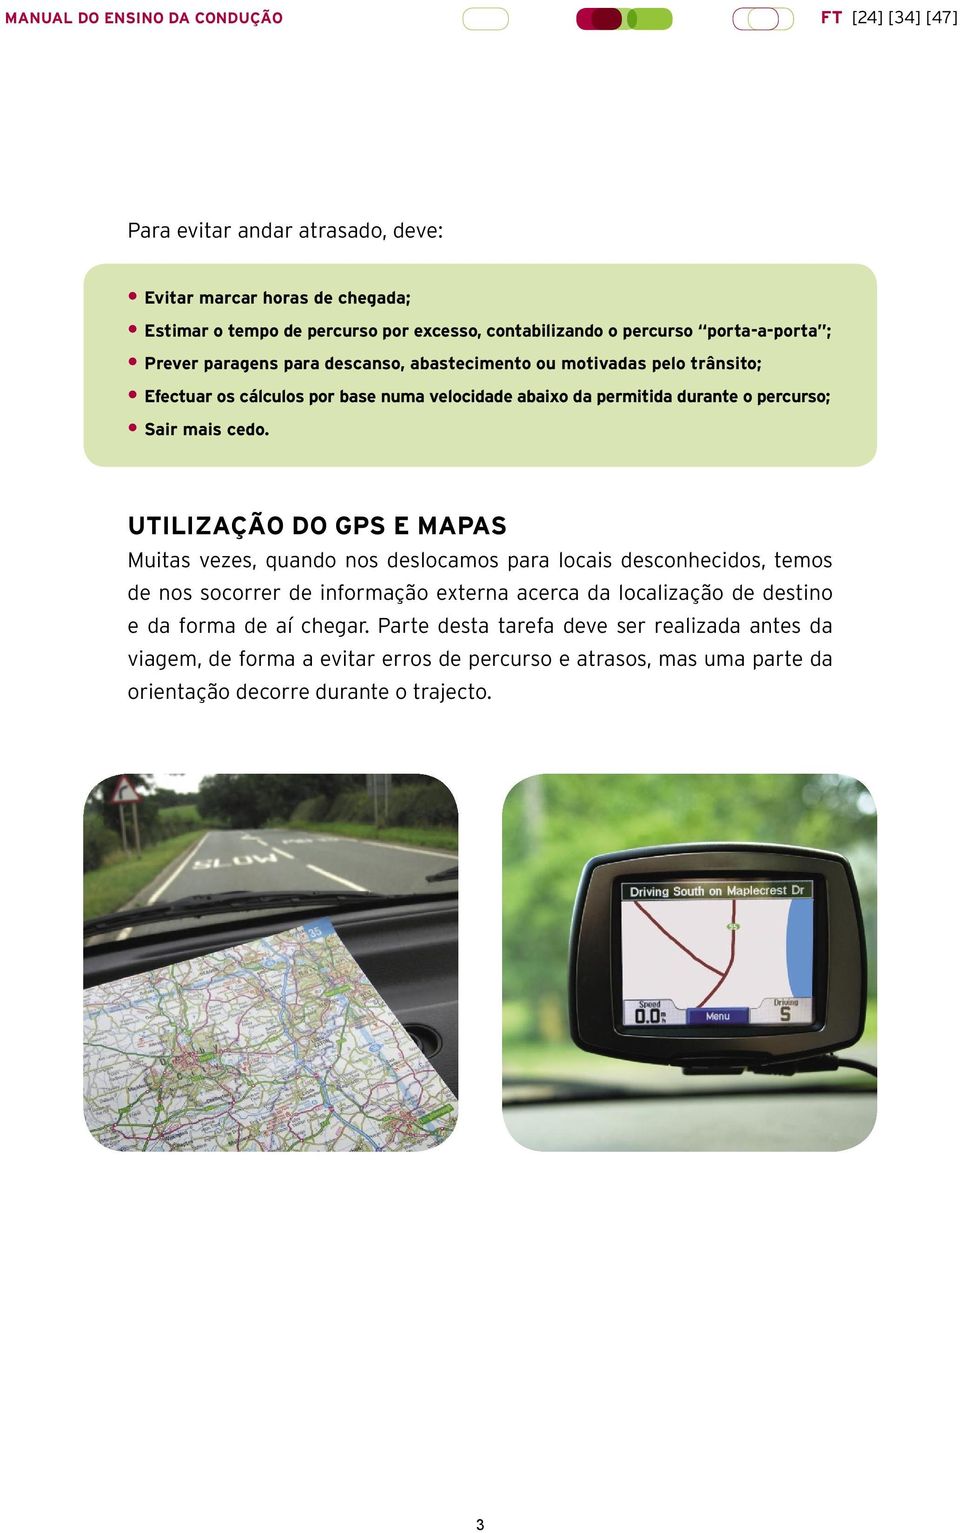 UTILIZAÇÃO DO GPS E MAPAS Muitas vezes, quando nos deslocamos para locais desconhecidos, temos de nos socorrer de informação externa acerca da localização de destino e